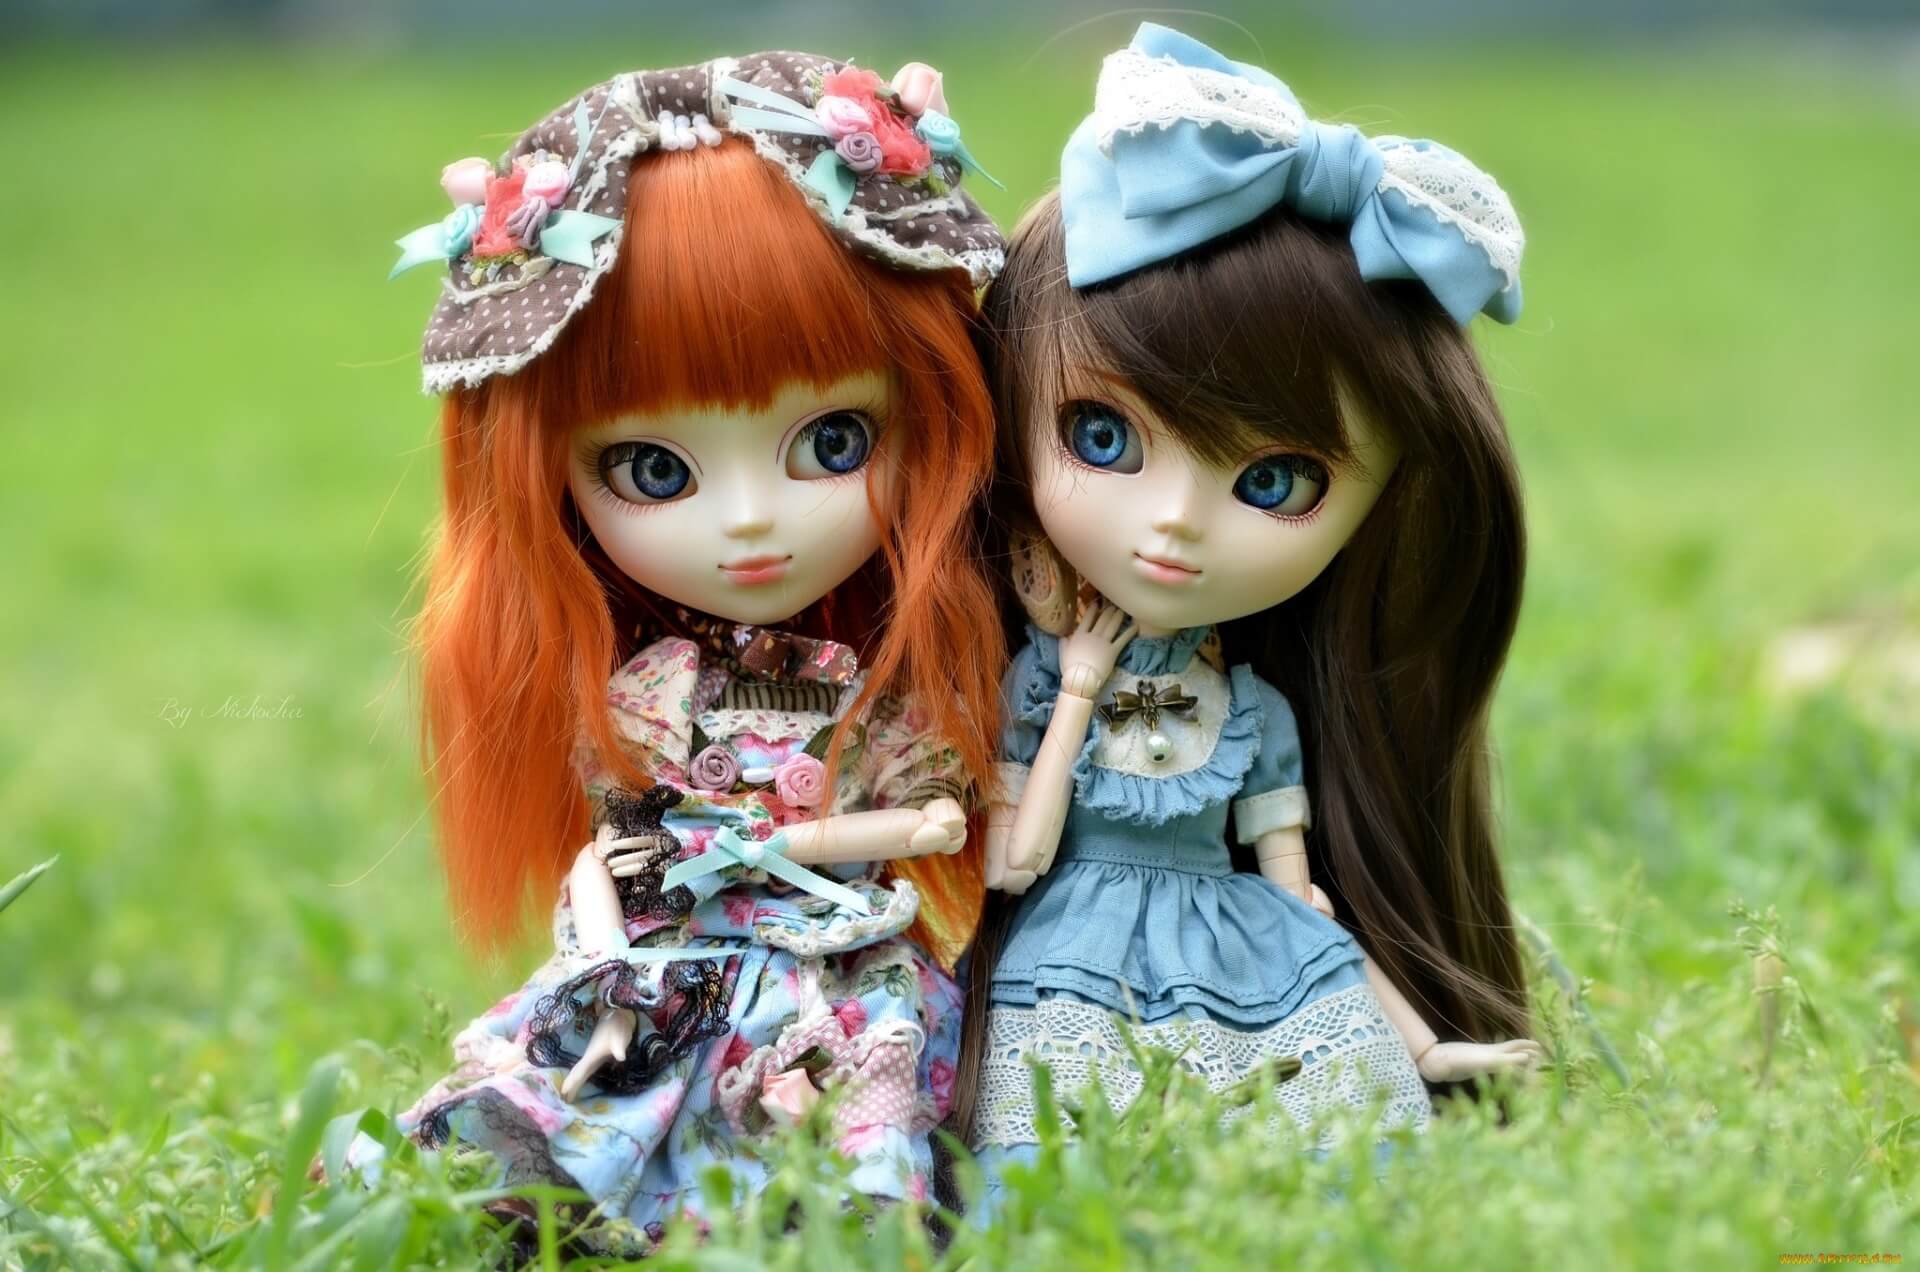 Best Cute Barbies Dolls HD Wallpaper & Background Image #cute #dolls #image. Beautiful barbie dolls, Doll image hd, Cute dolls